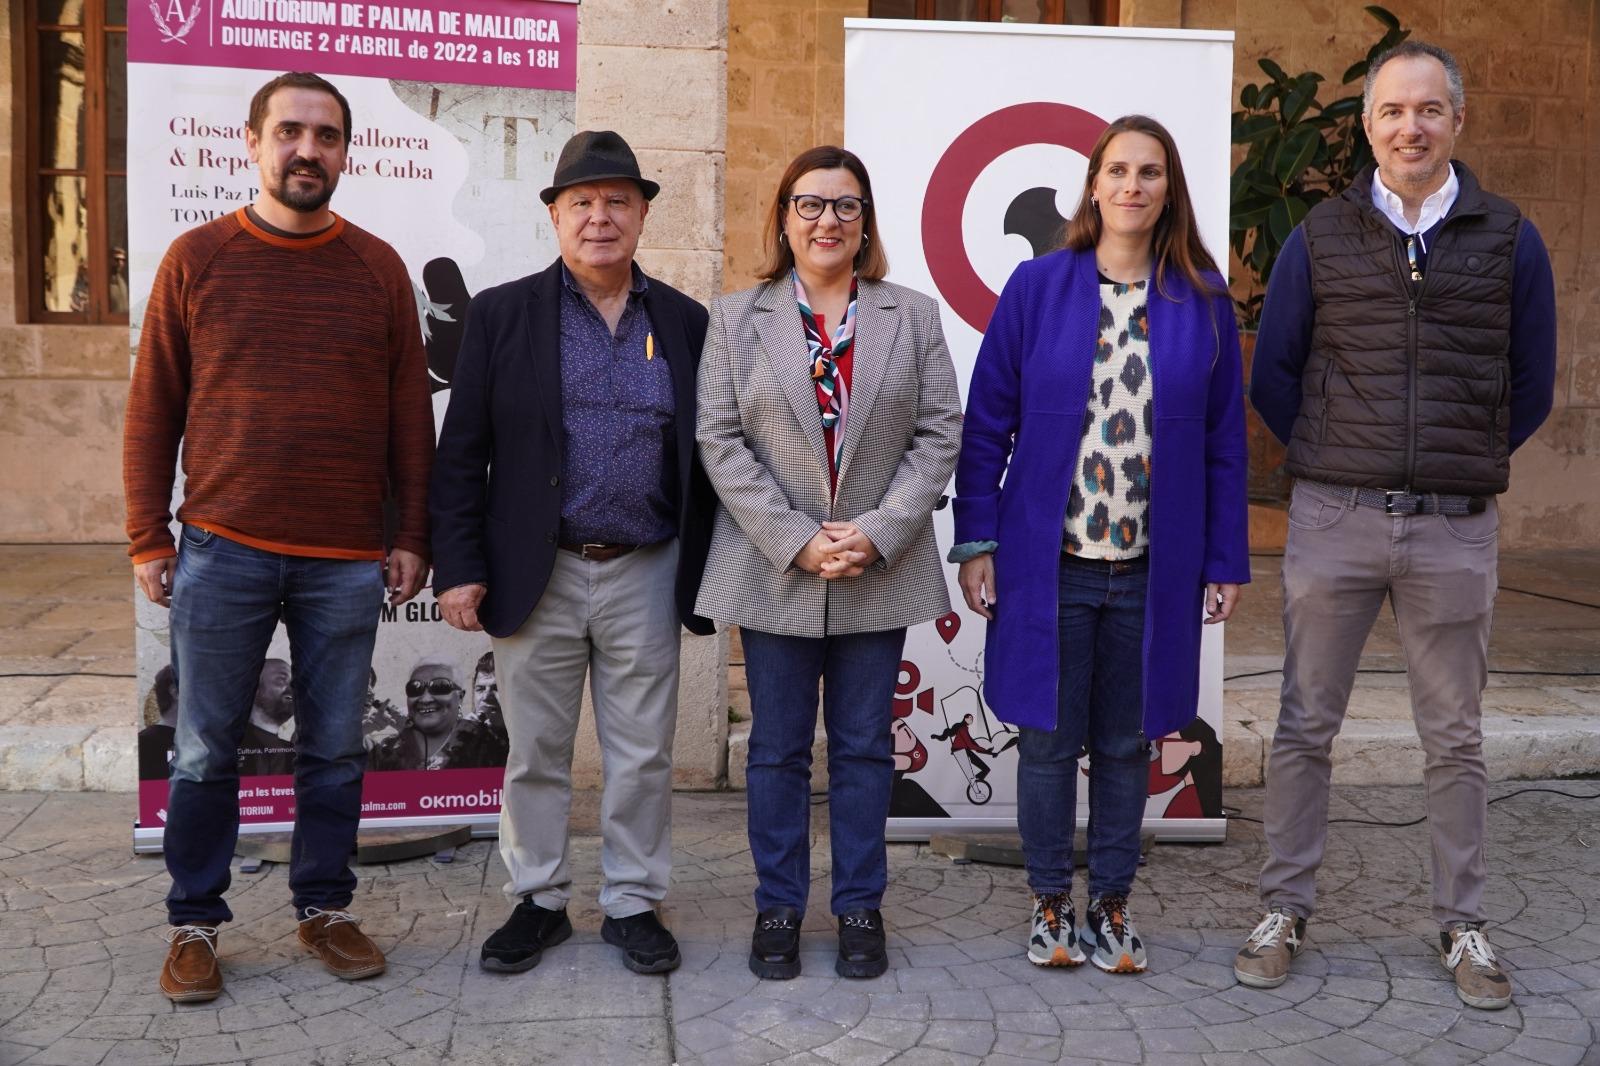 losadors de Mallorca i repentistes de Cuba actuaran junts a l'Auditòrium Glosa Fest